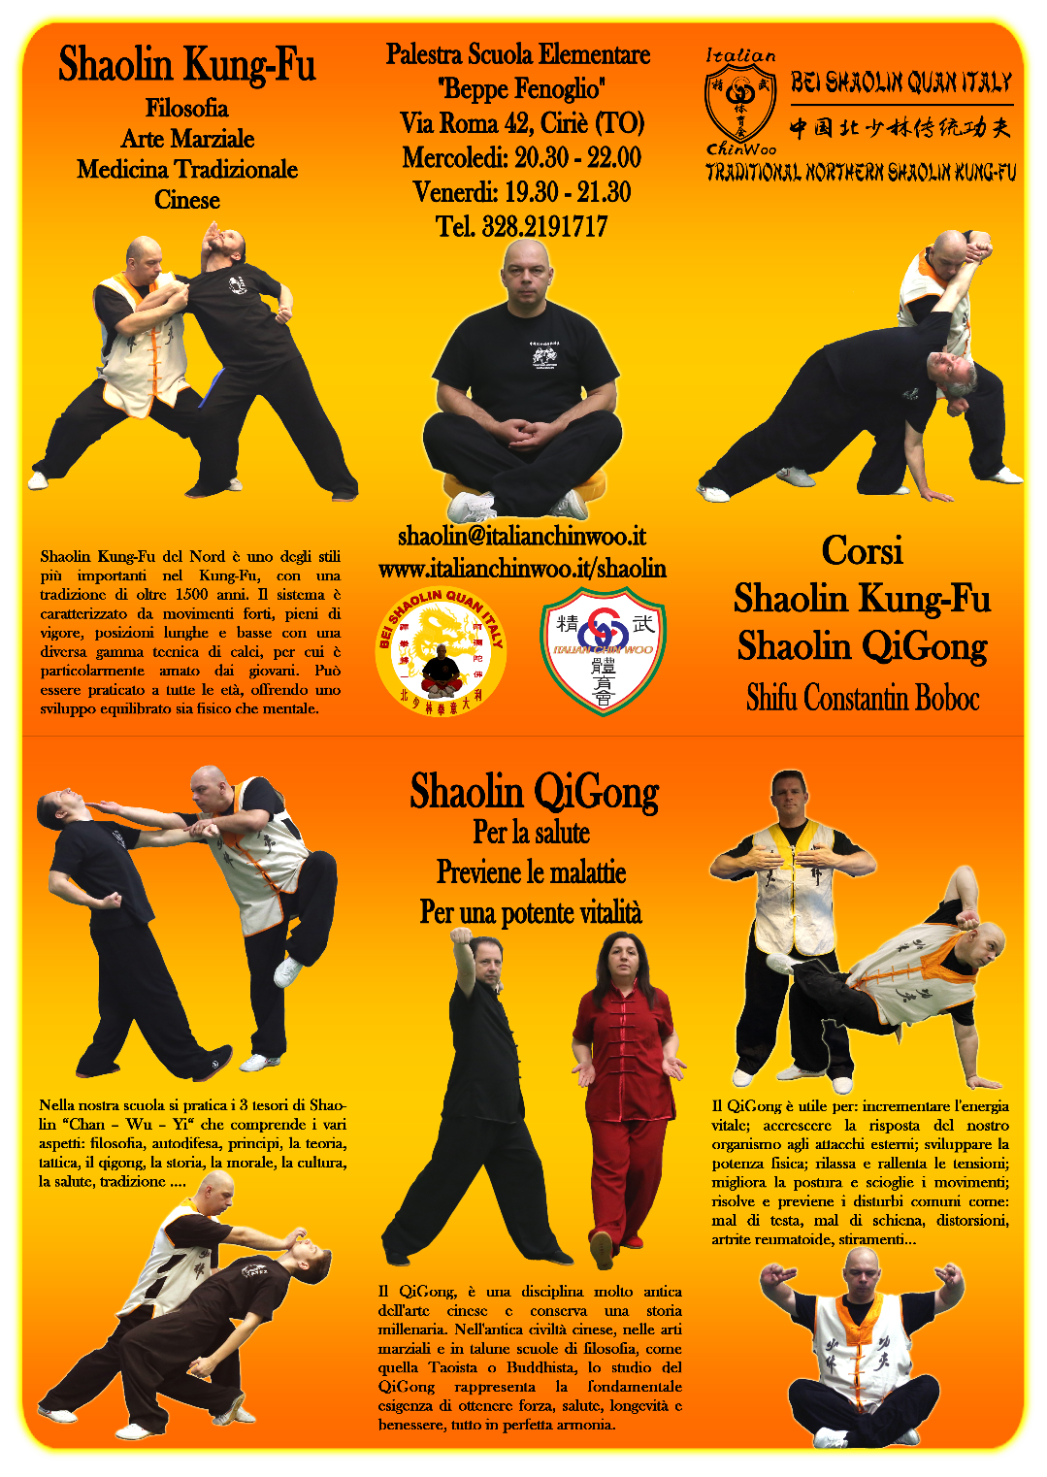 Corso Bei Shaolin Kungfu